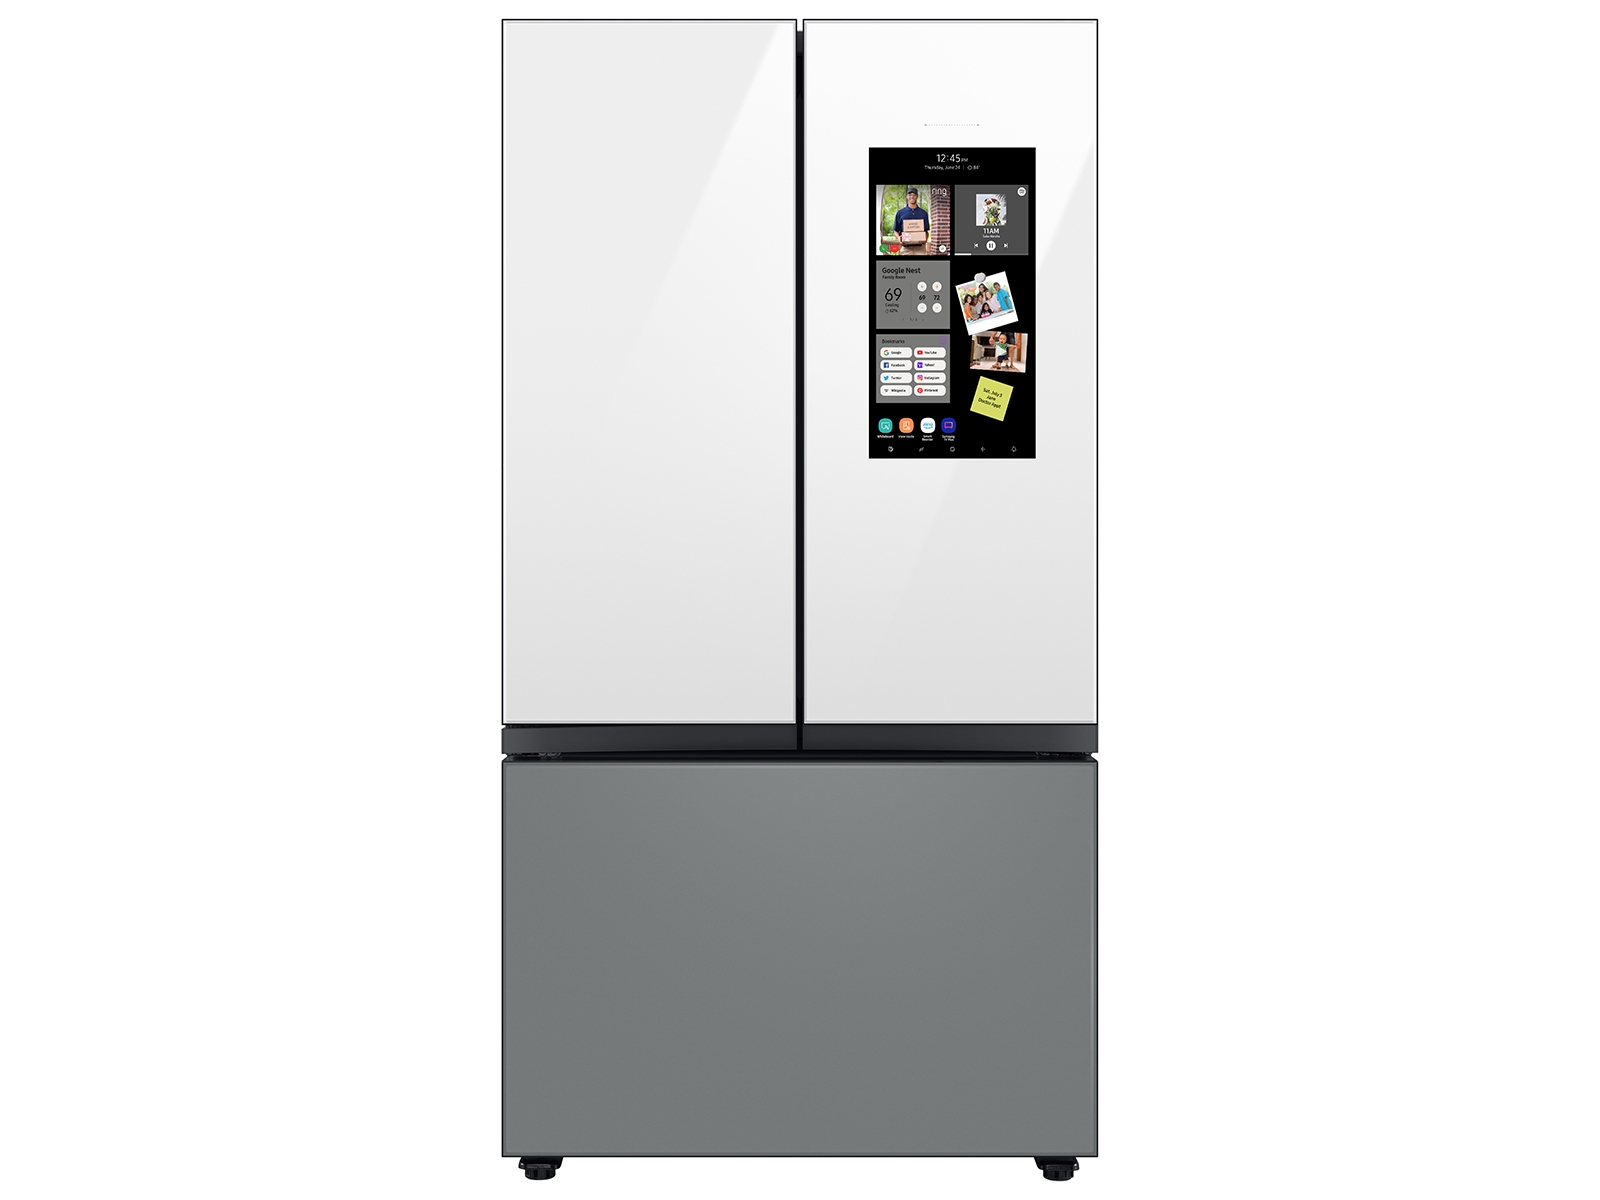 Photos - Fridge Samsung Bespoke 3-Door French Door Refrigerator in Charcoal Glass / Matte 